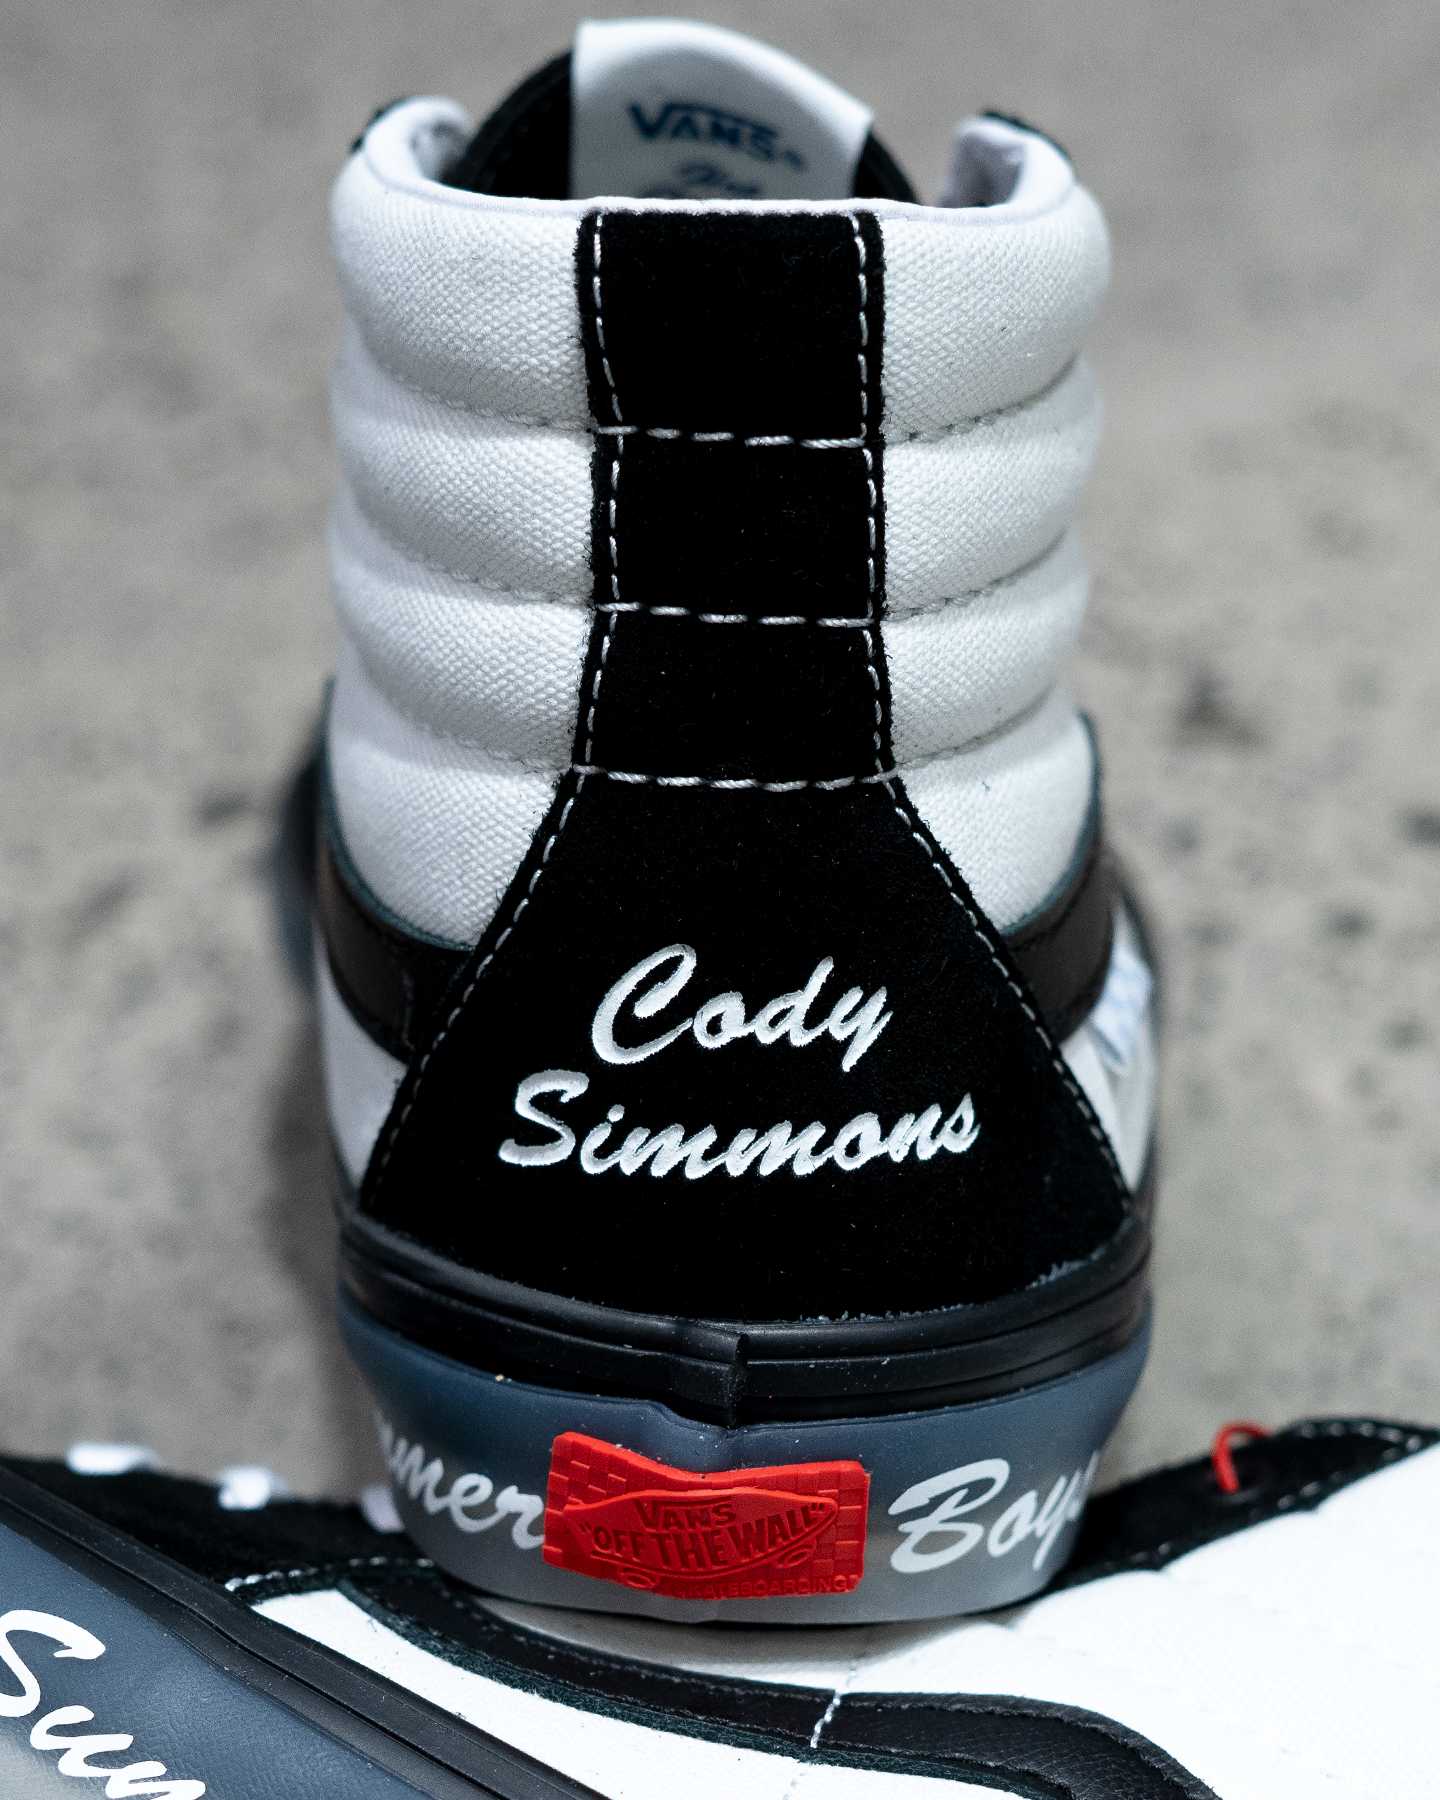 cody simmons branding on back of black and white sk8 hi